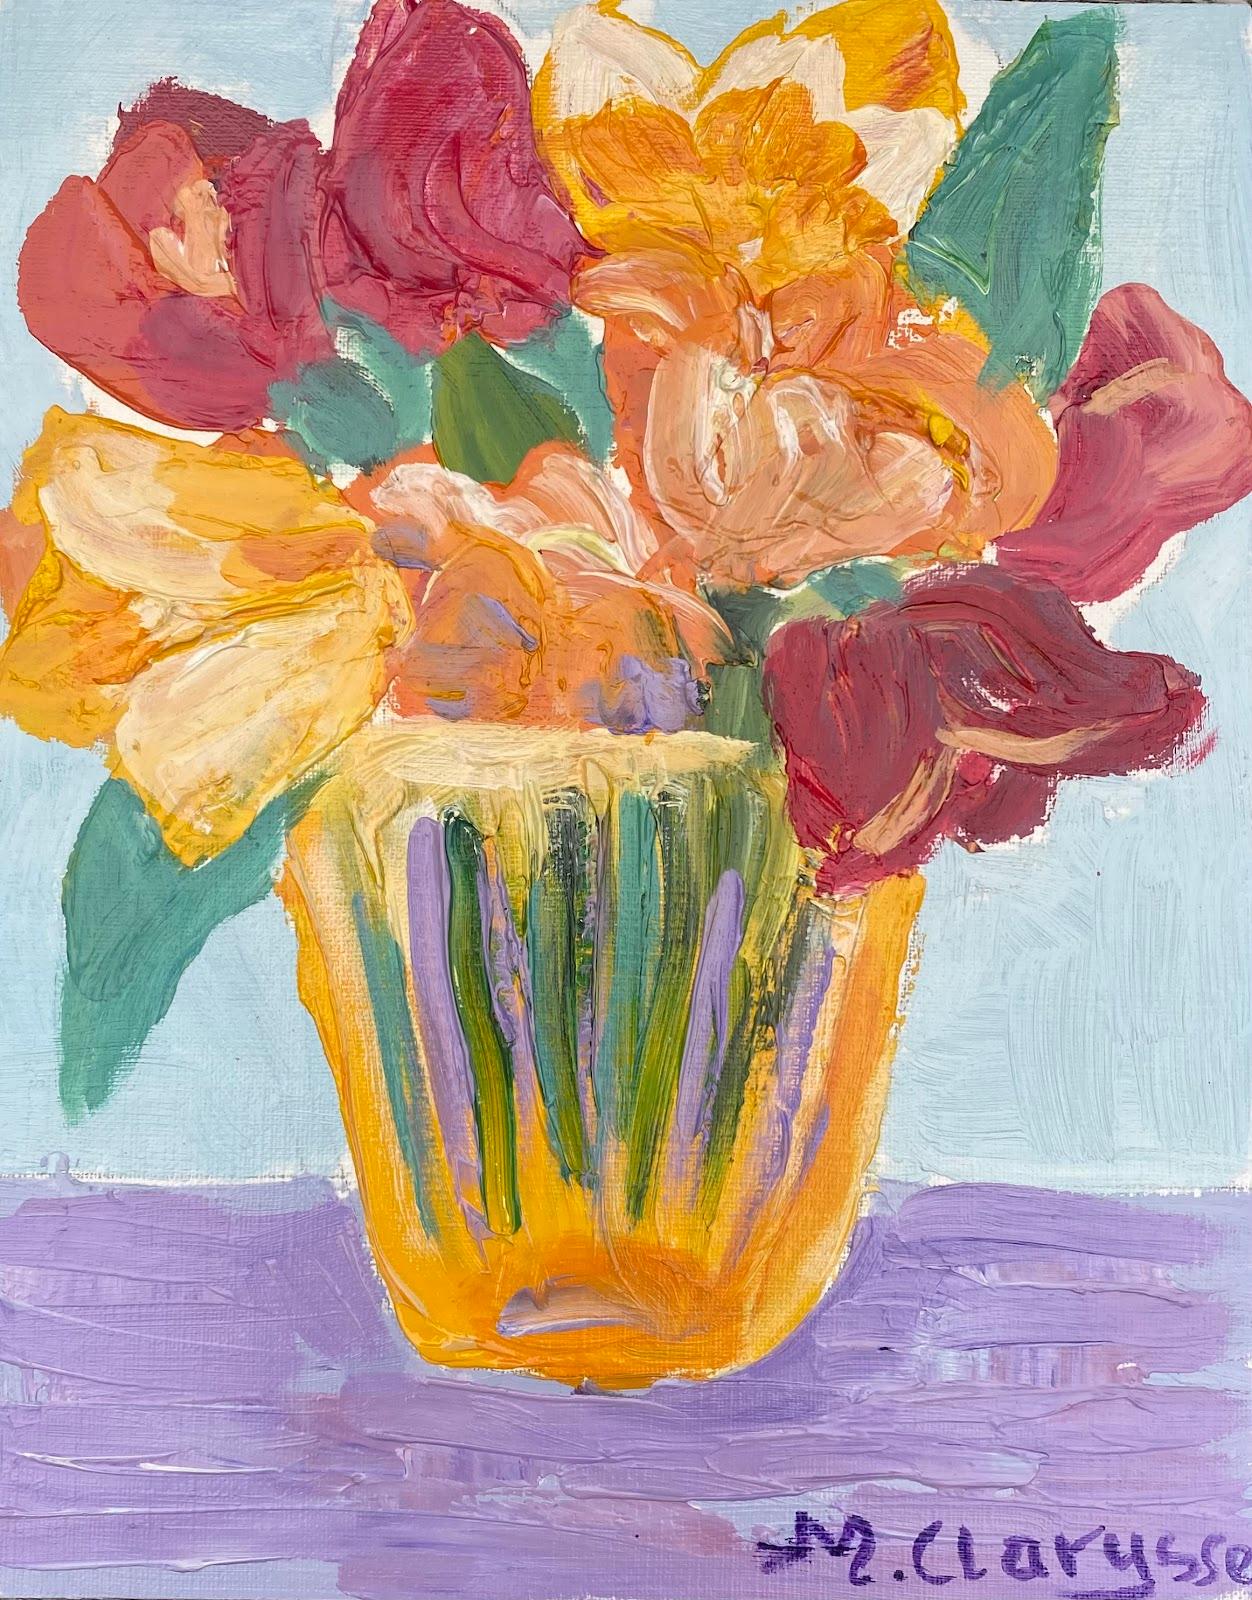 Abstract Painting Maggy Clarysse - Peinture à l'huile impressionniste française colorée représentant des fleurs rouges et orange dans un vase